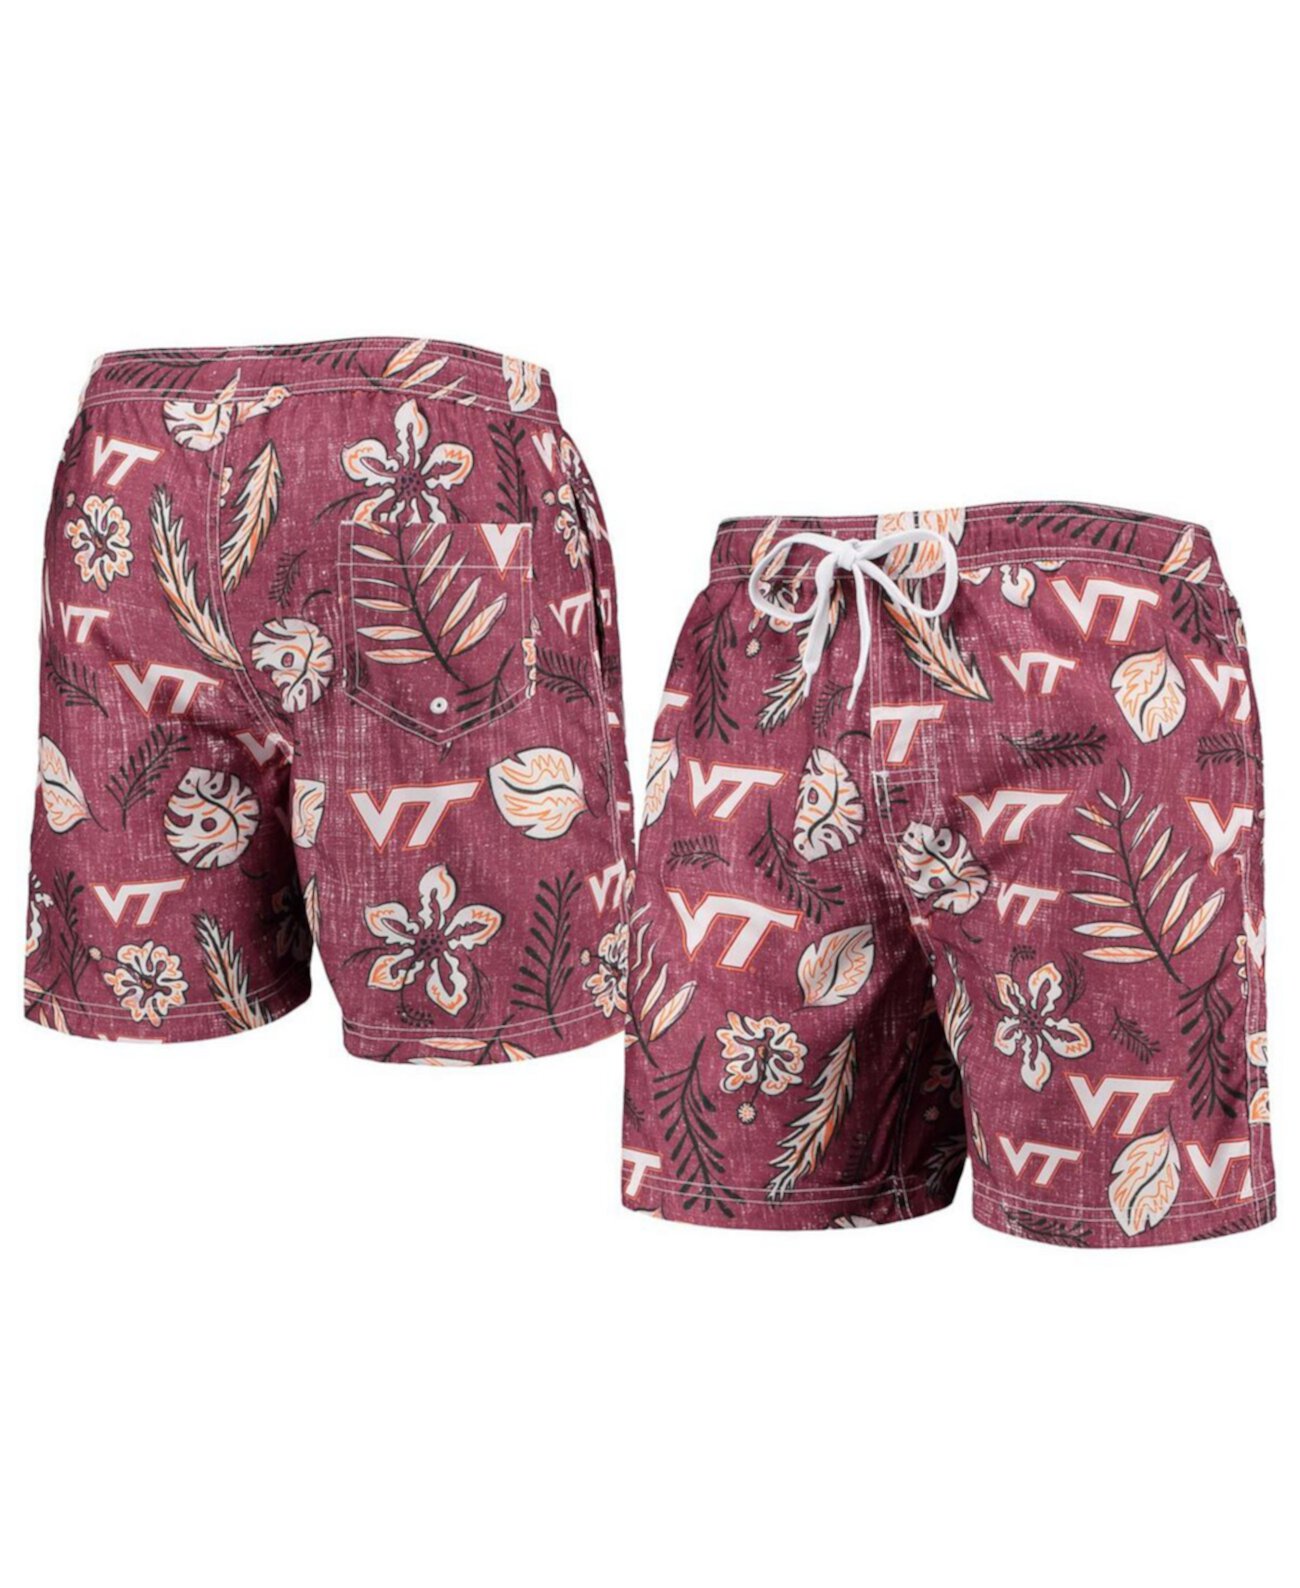 Мужские бордовые плавки Virginia Tech Hokies в винтажном стиле с цветочным принтом Wes & Willy